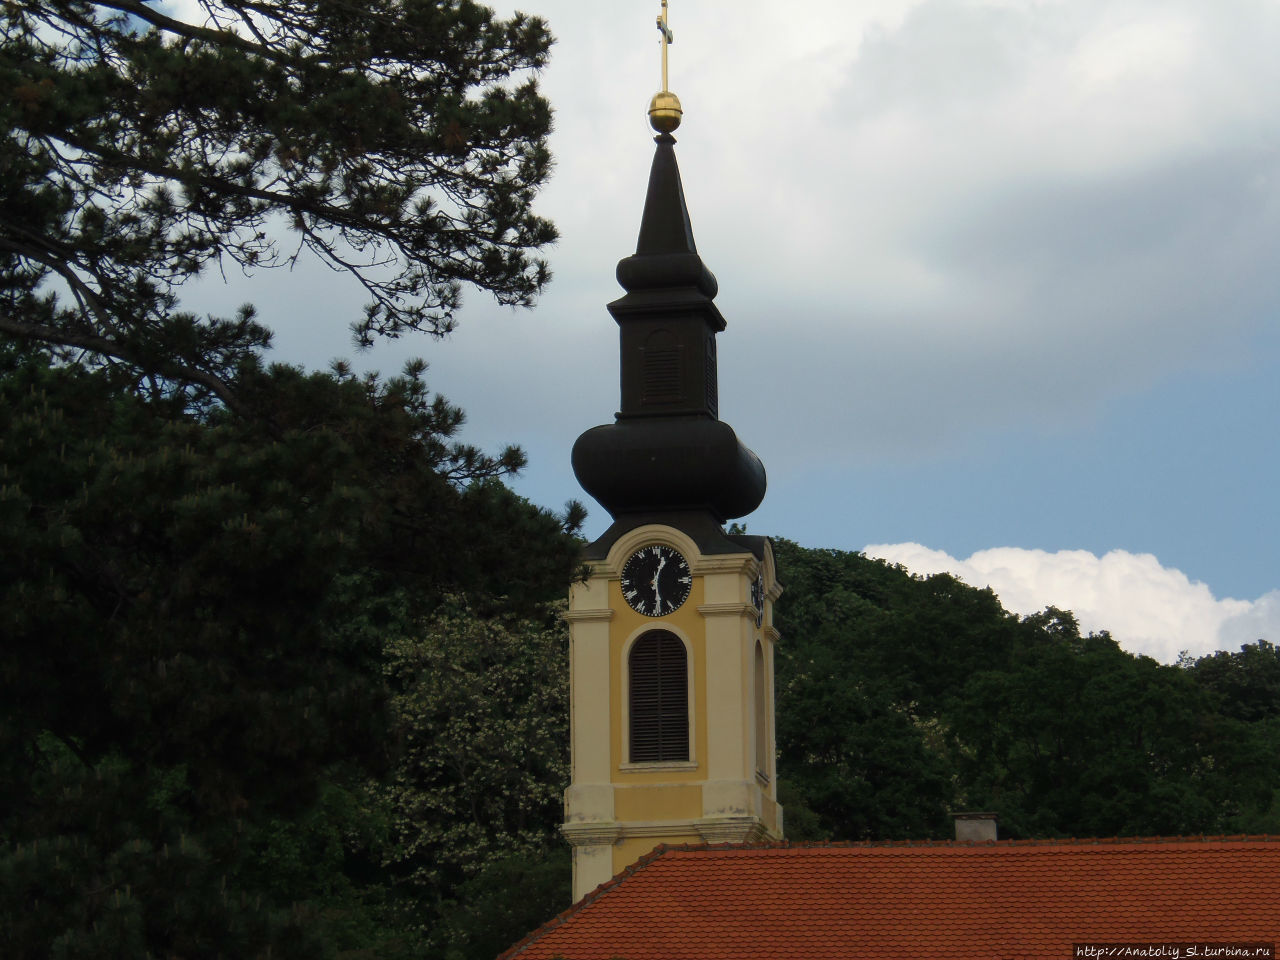 Фрушка гора. Часть 3. Монастырь Гргетег. Фрушка-Гора Национальный парк, Сербия